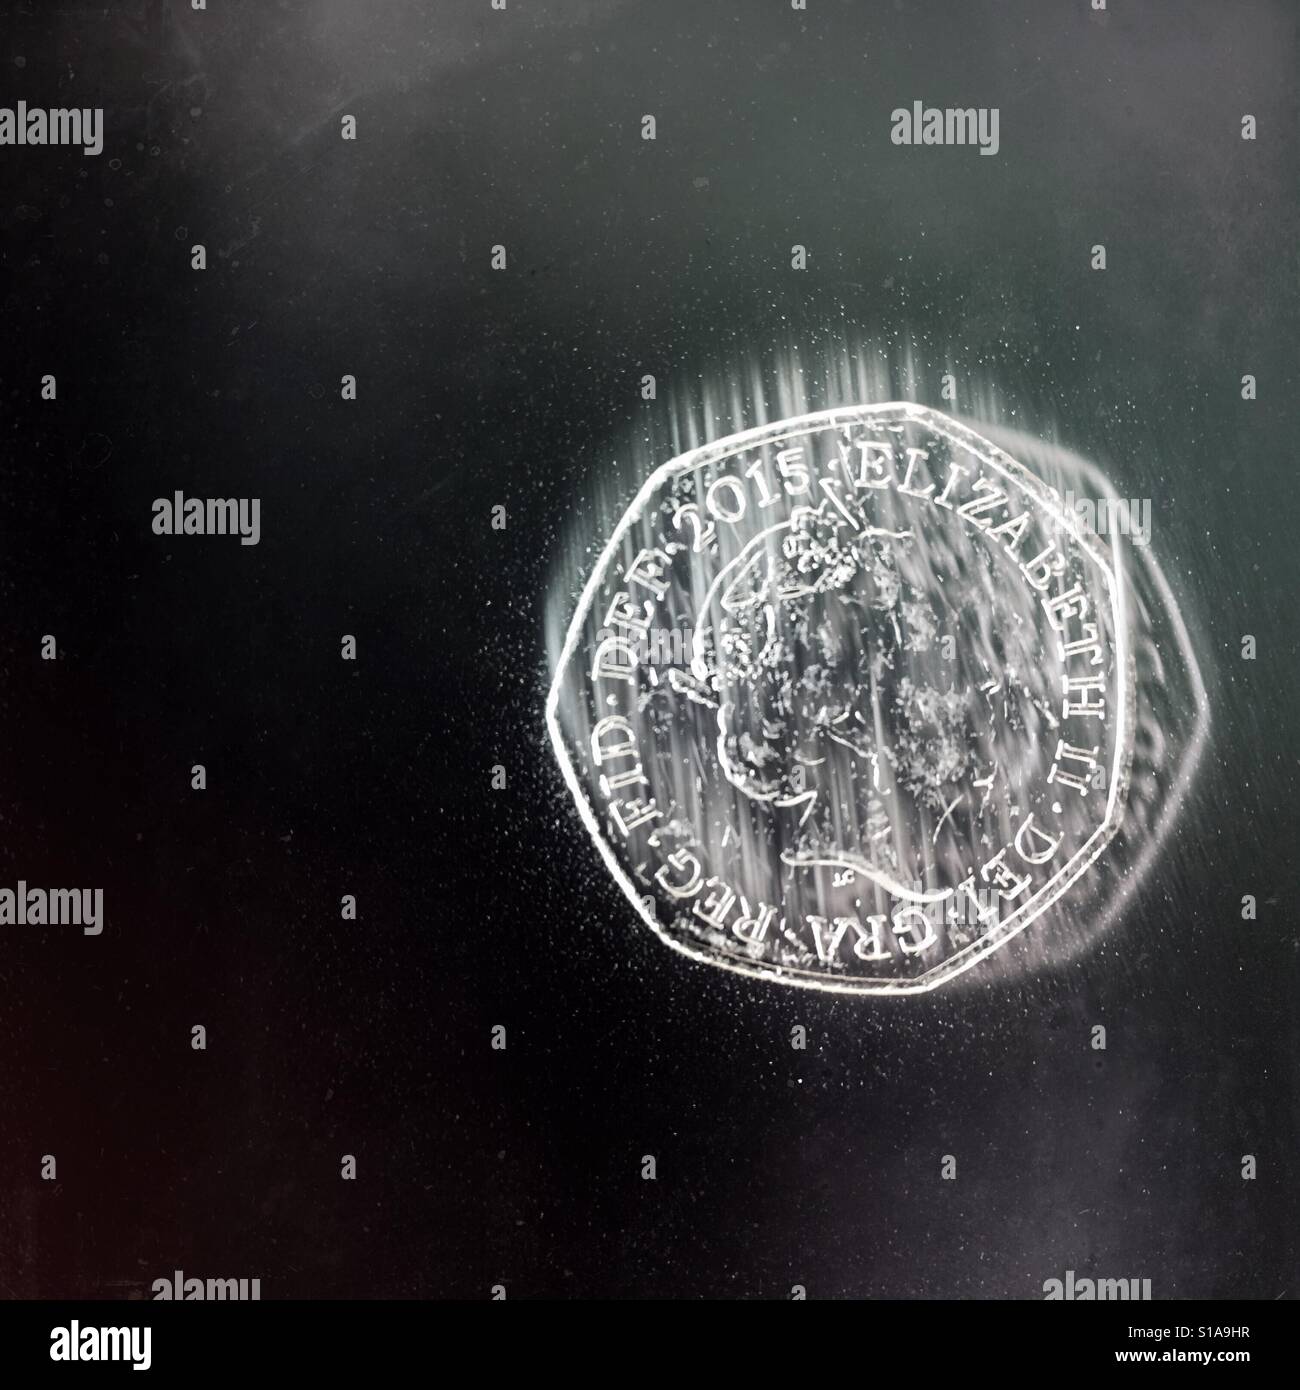 Eine britische 50 Pence-Münze mit Motion blur um die Wirkung des Fallens, vor einem dunklen Hintergrund zu geben. Stockfoto